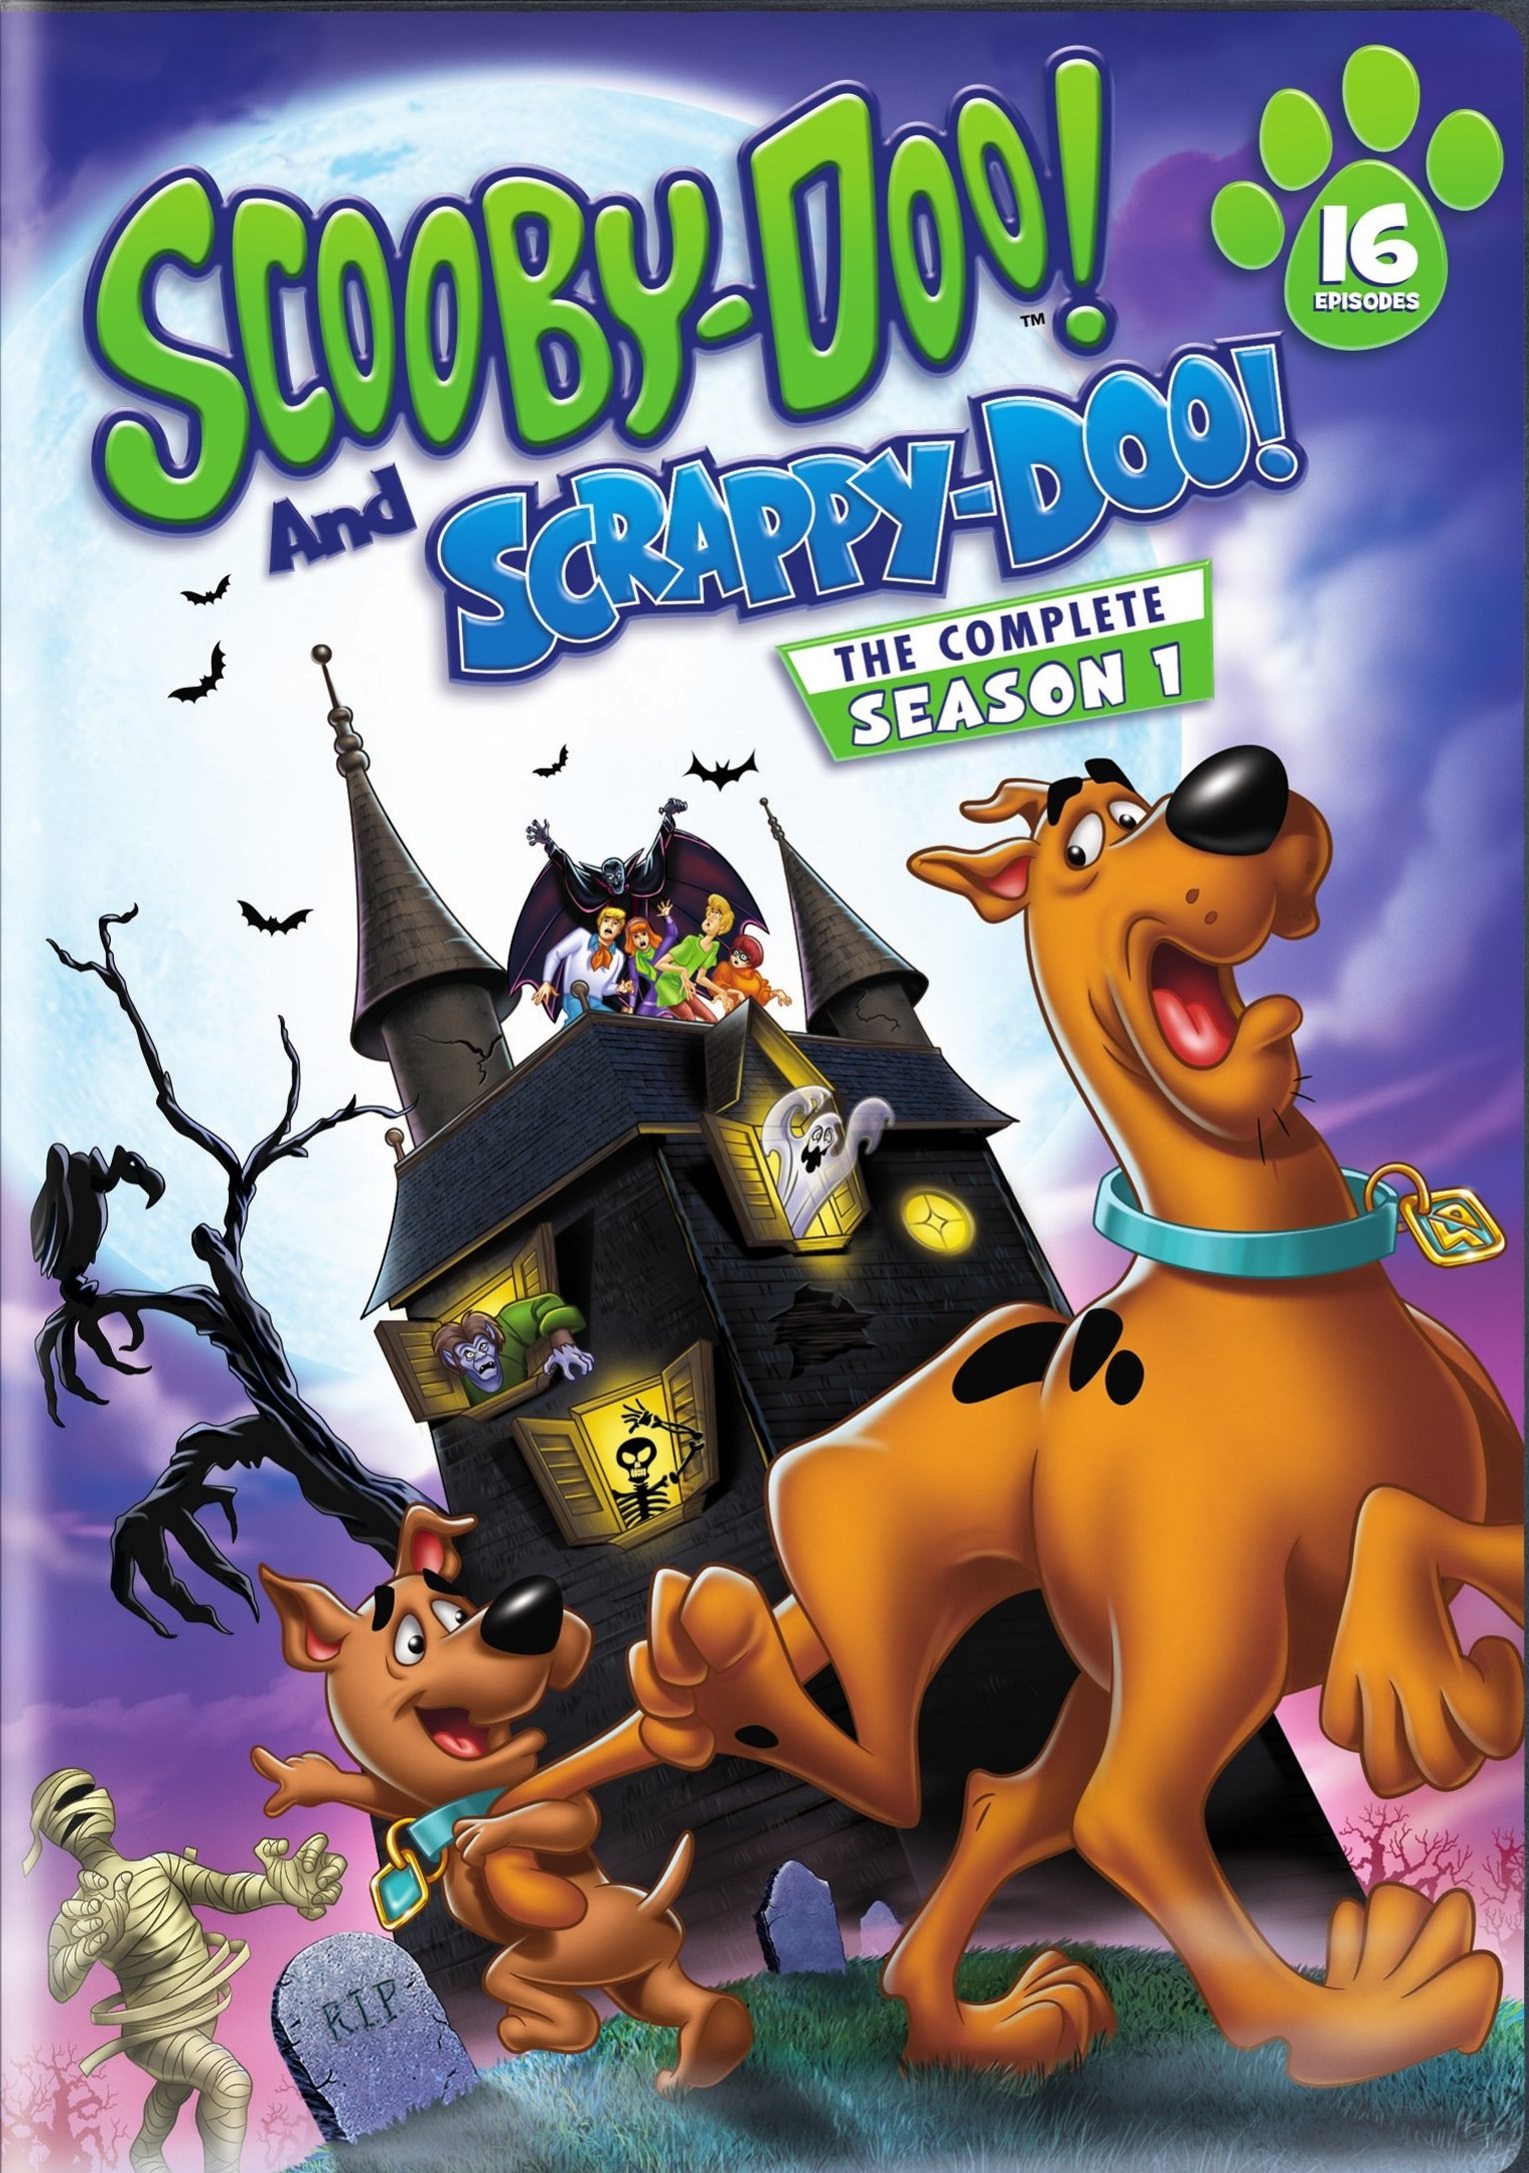 Puppy Power! Scrappy-Doo Comes to DVD - GeekDad